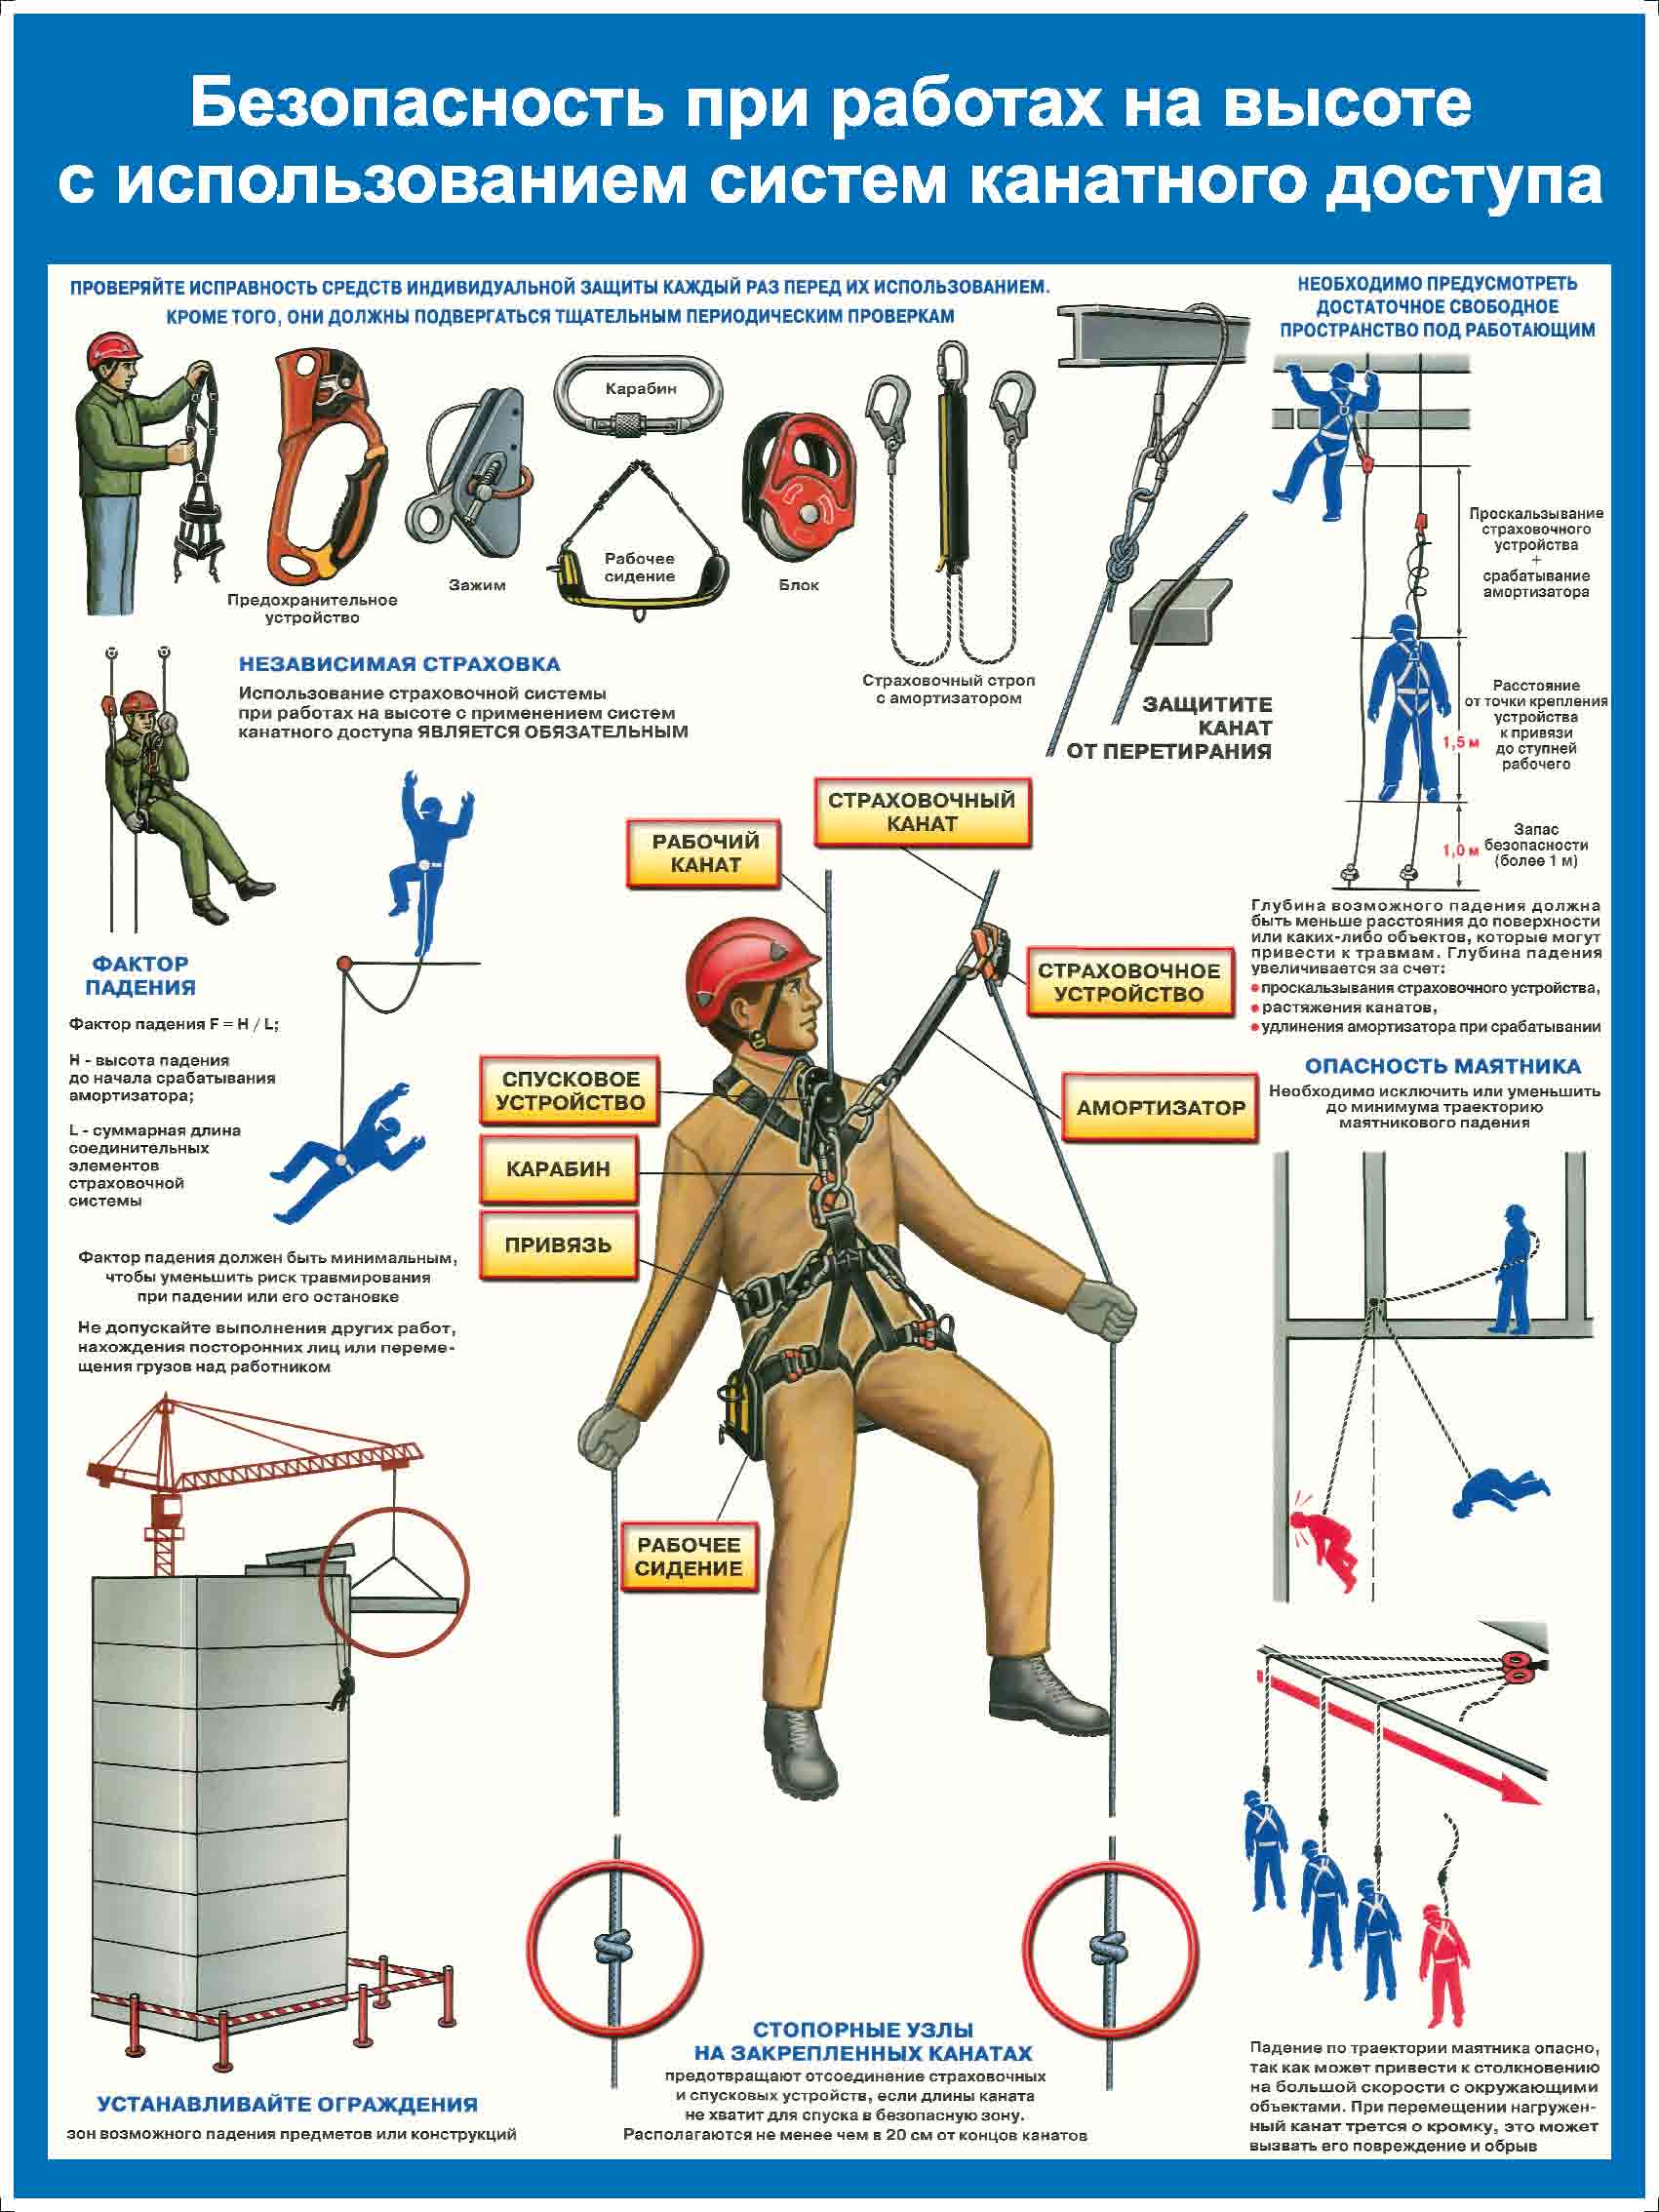 Требования к пожарной сигнализации: нормативы, регламентирующие разработку проекта, характеристики кабелей, монтаж и обслуживание